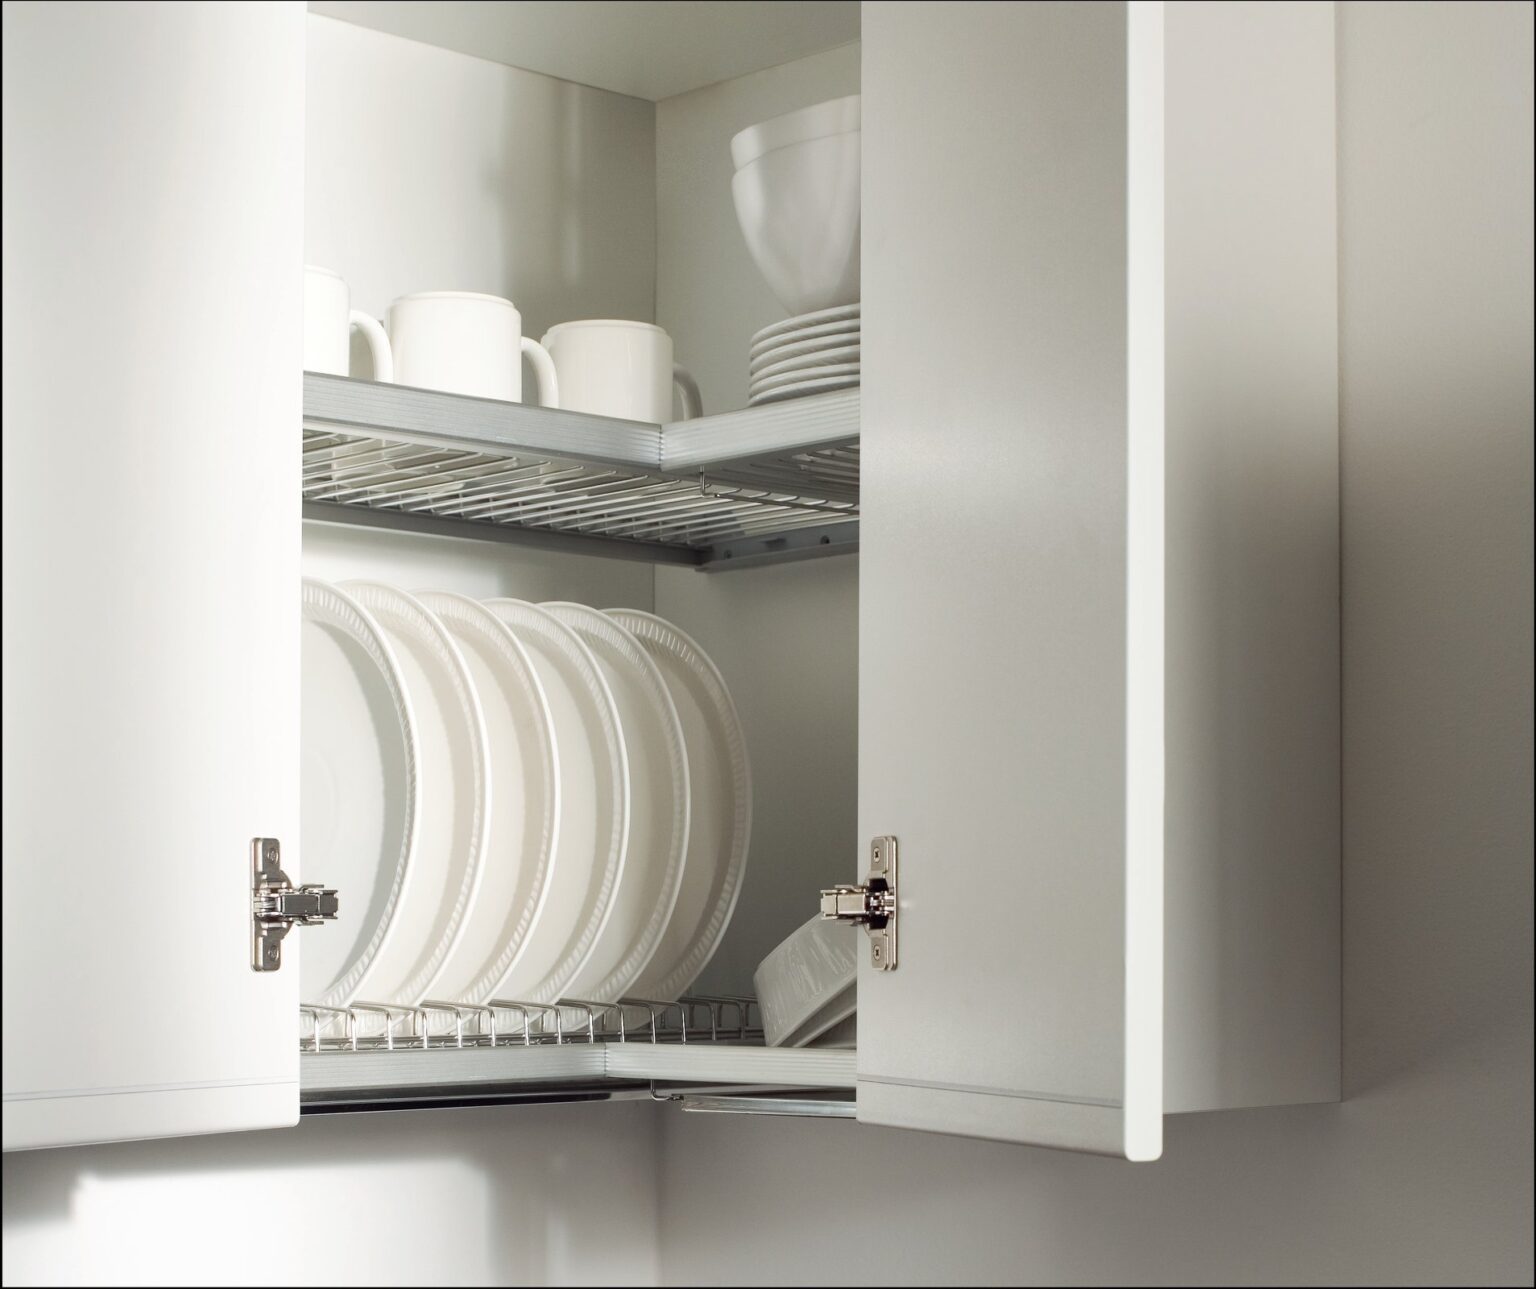  сушка для посуды в угловой шкаф: разновидности конструкций .